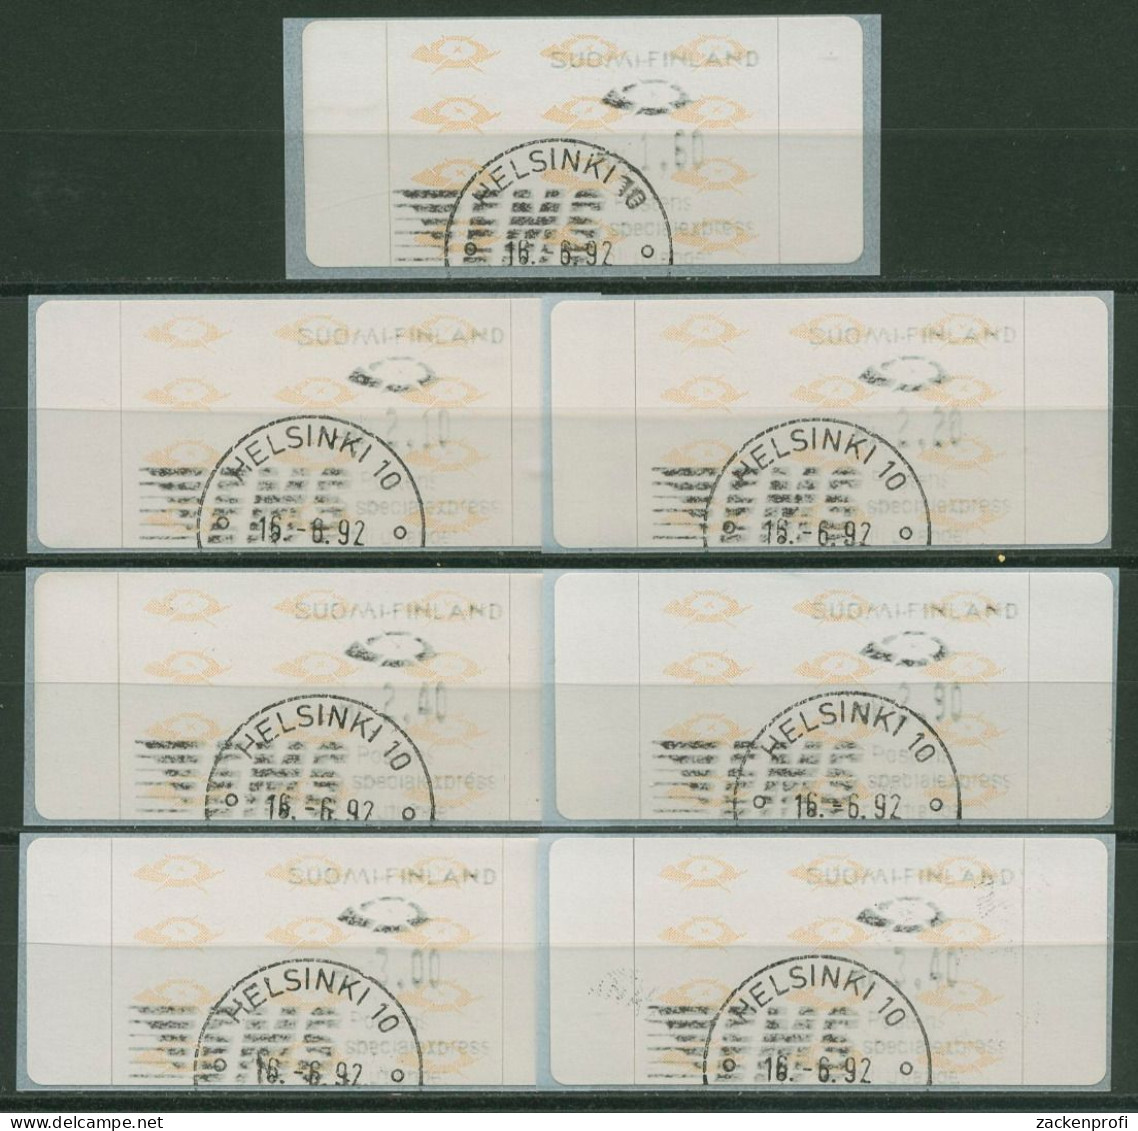 Finnland Automatenmarken 1992 Posthörner Satz 7 Werte ATM 12.2 S 1 Gestempelt - Machine Labels [ATM]